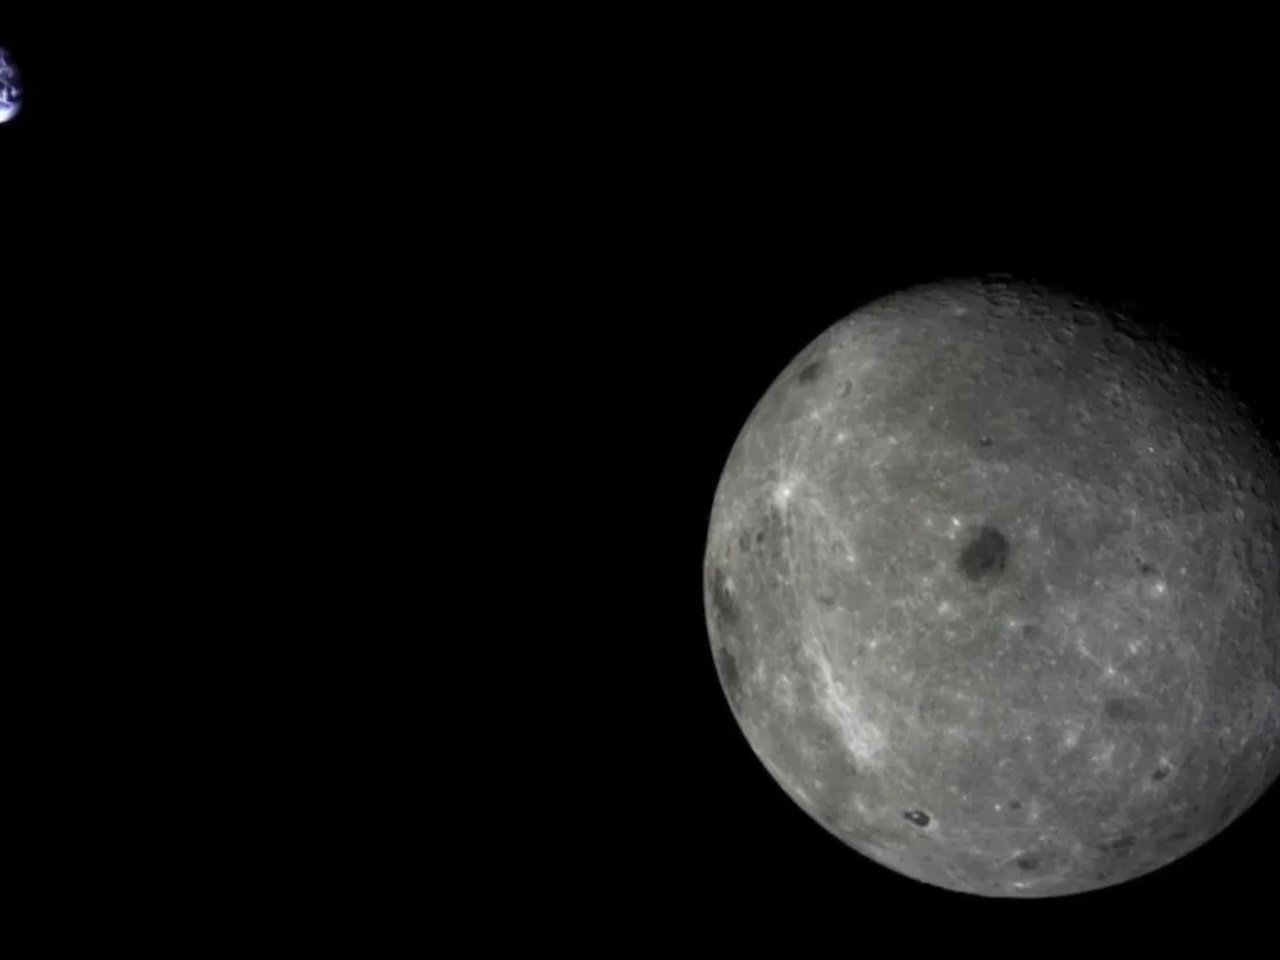 中国、軌道投入に失敗した月探査衛星の回復試みる--米宇宙軍の追跡データで判明